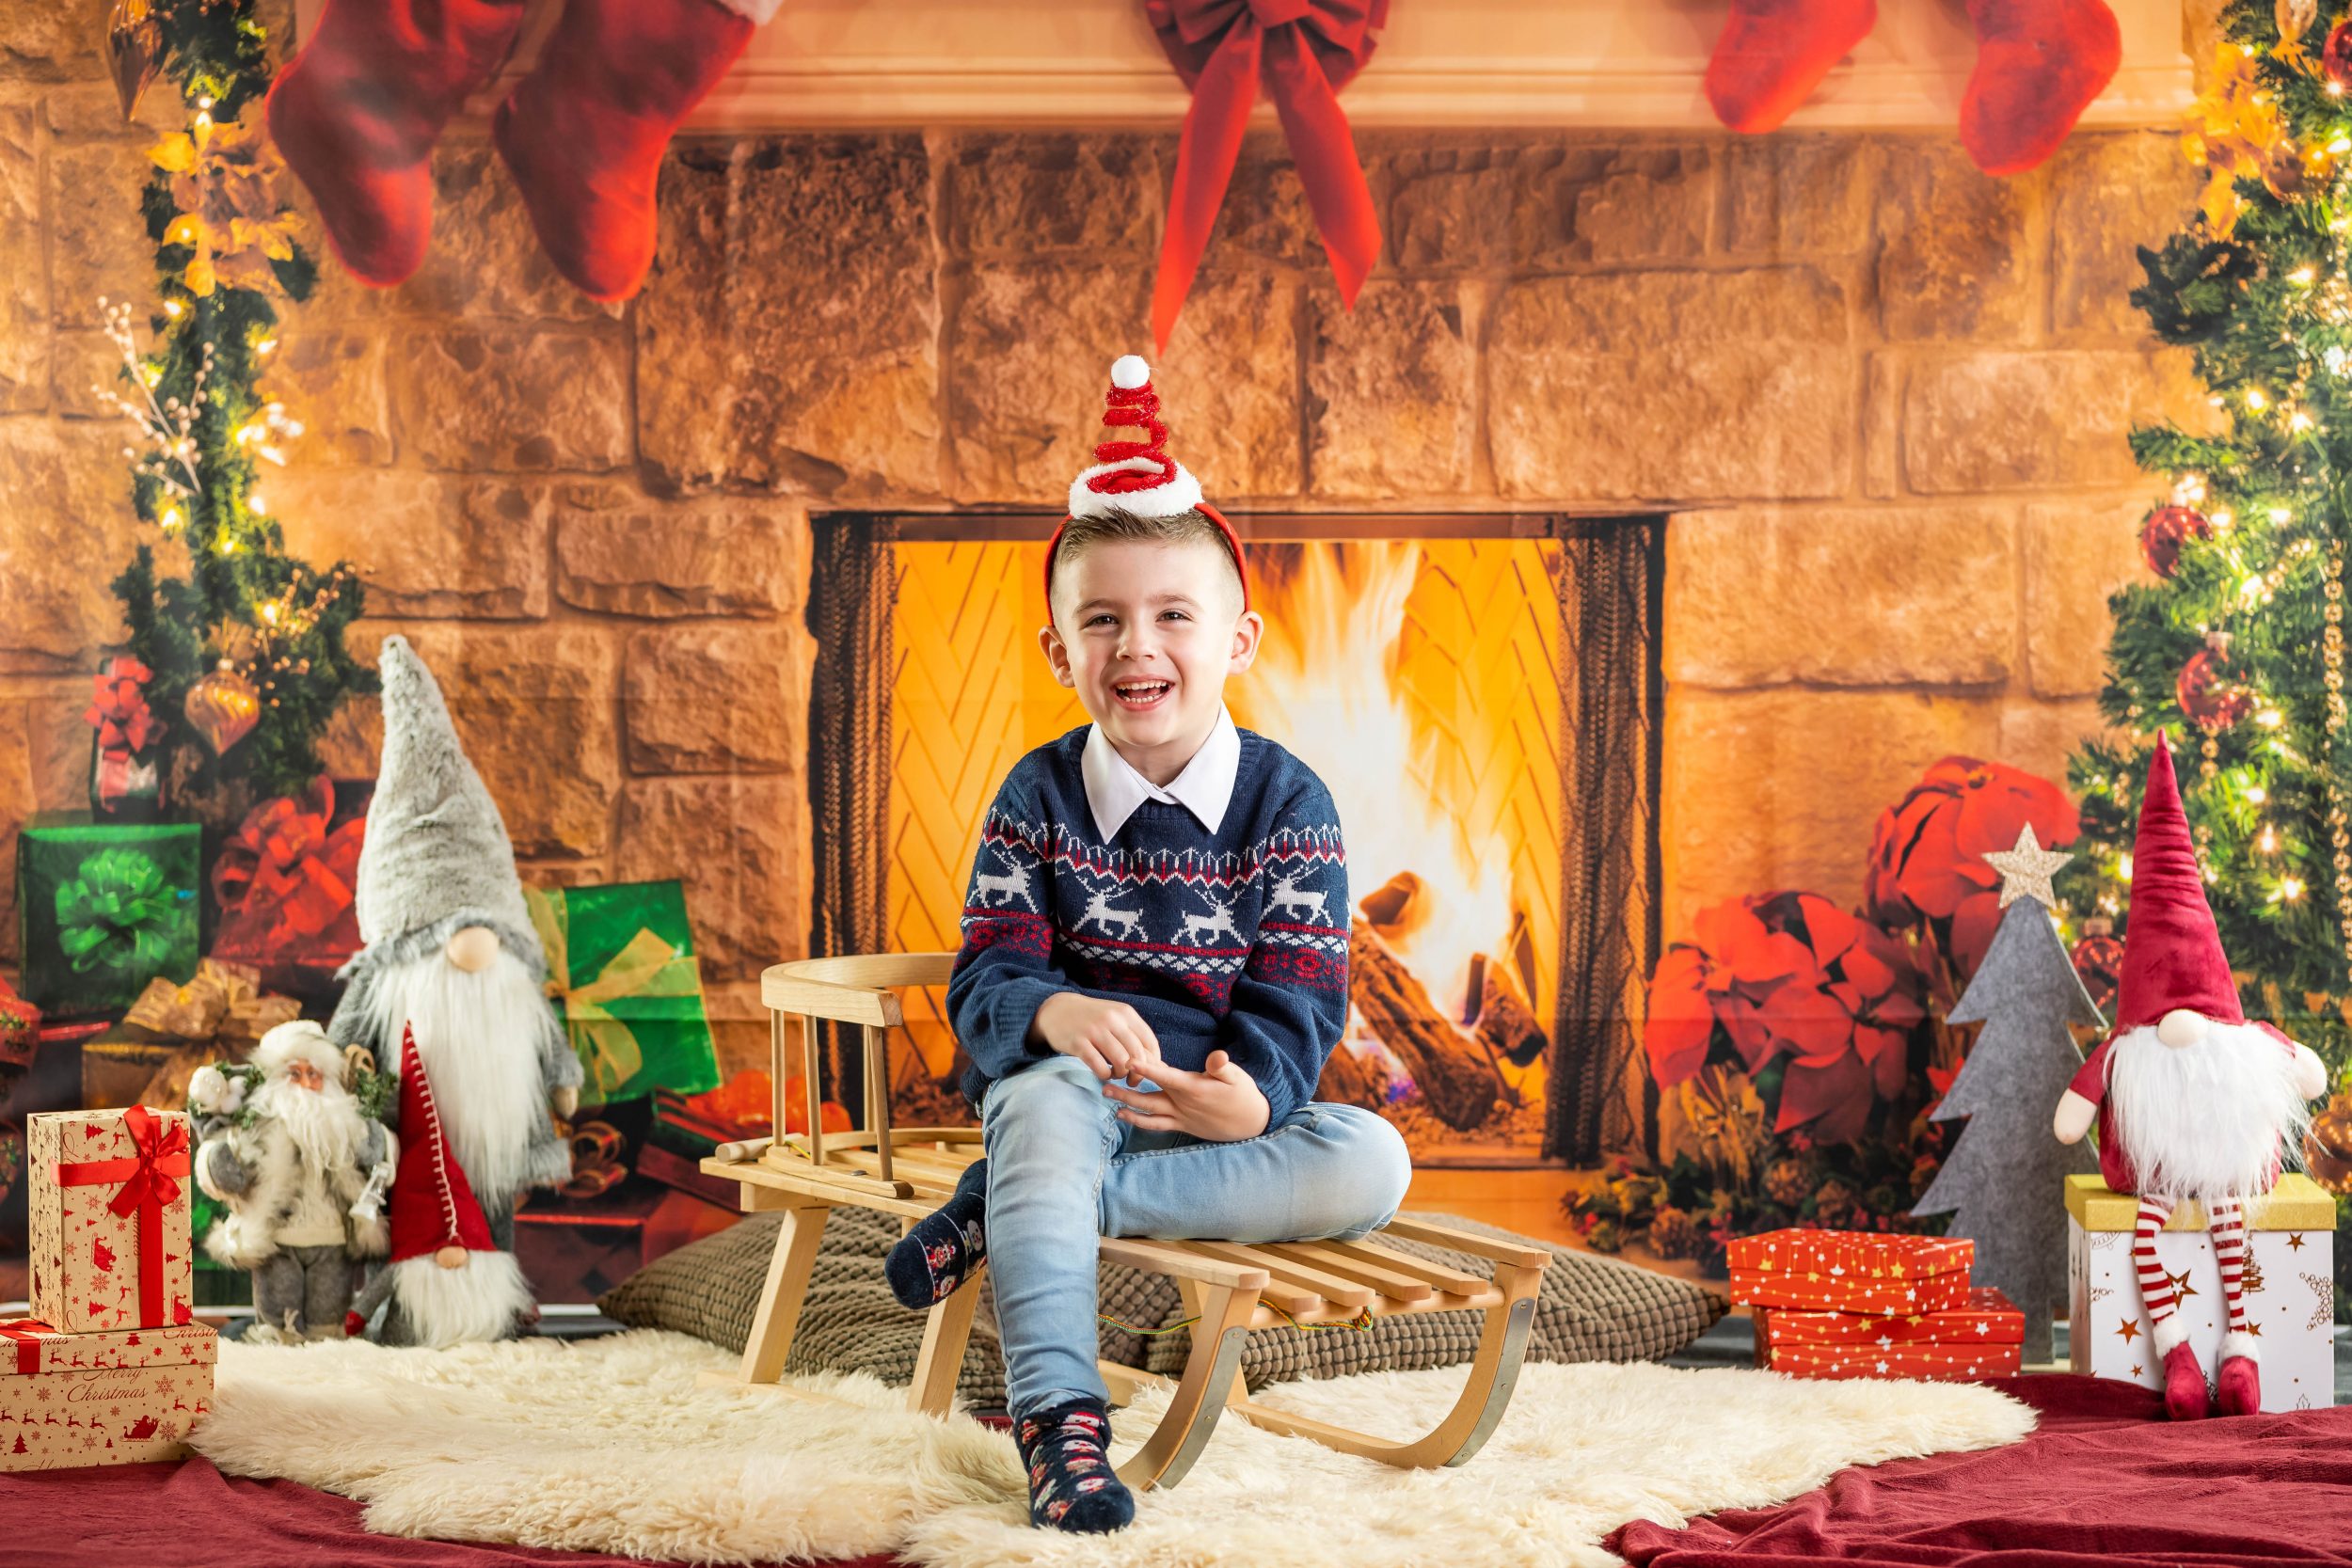 Ein kleiner Junge sitzt auf einem Schlitten vor einer Fotowand, die einen weihnachtlich geschmückten Kamin zeigt. Links und rechts sind Weihnachtswichtel und Geschenke.